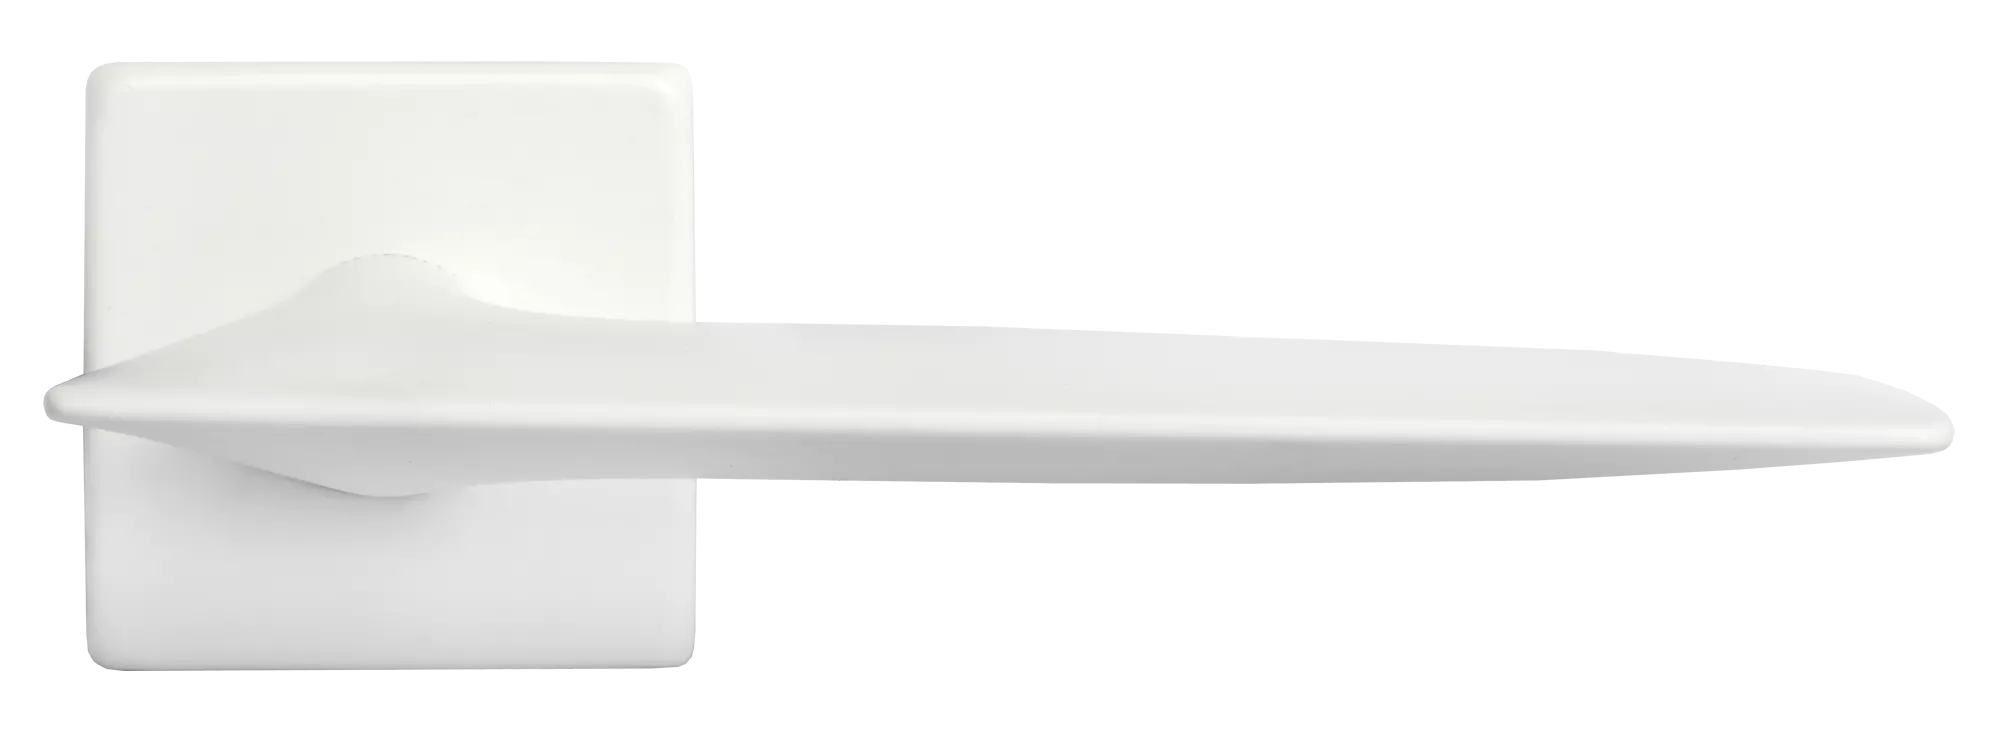 GALACTIC S5 BIA, ручка дверная, цвет - белый фото купить в Набережных Челнах